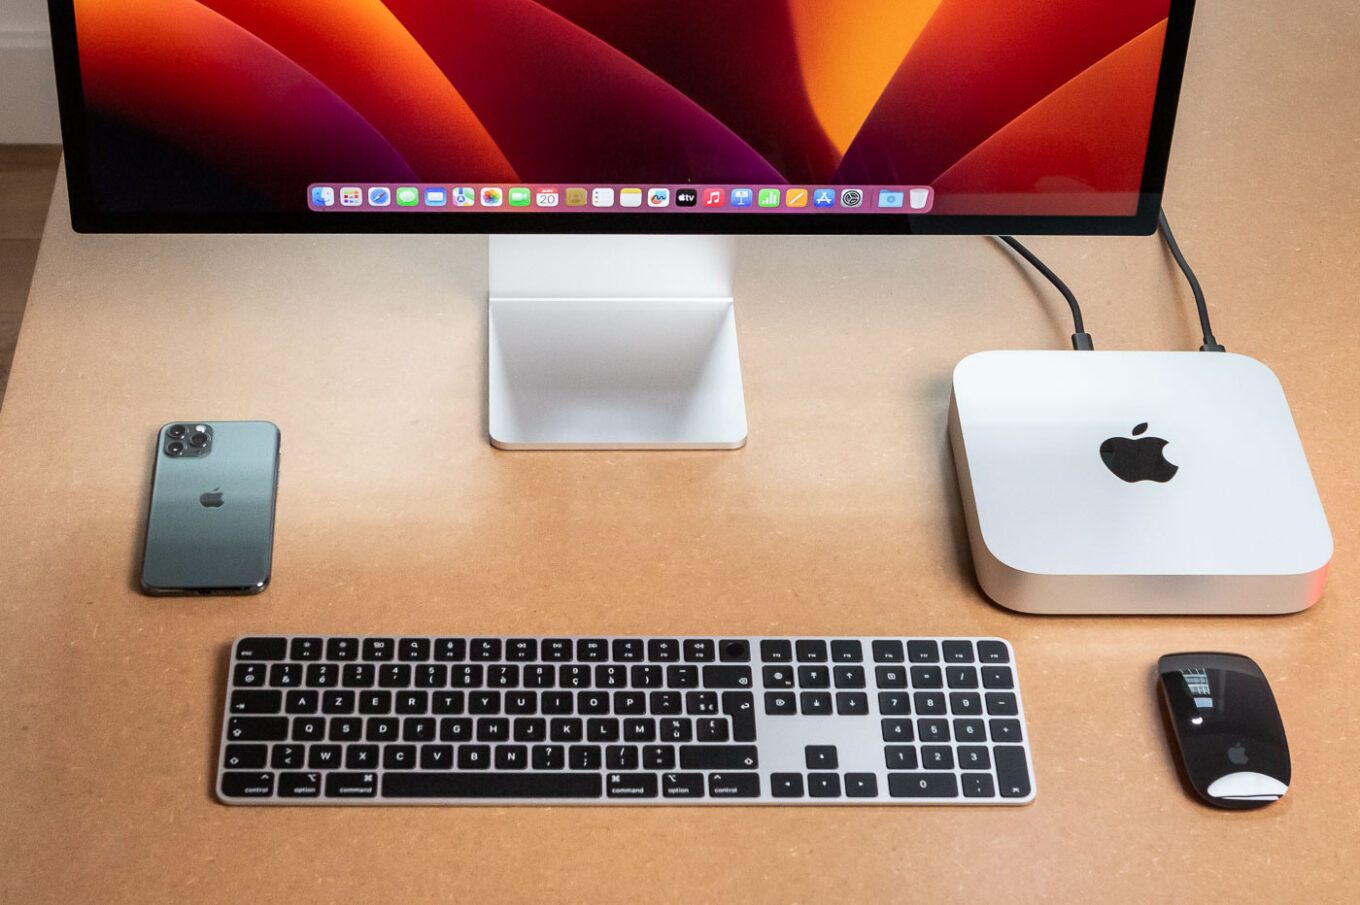 Le Mac mini est toujours livré sans clavier ni souris. Une option gratuite pour ceux qui n'ont pas cet équipement serait bienvenue.